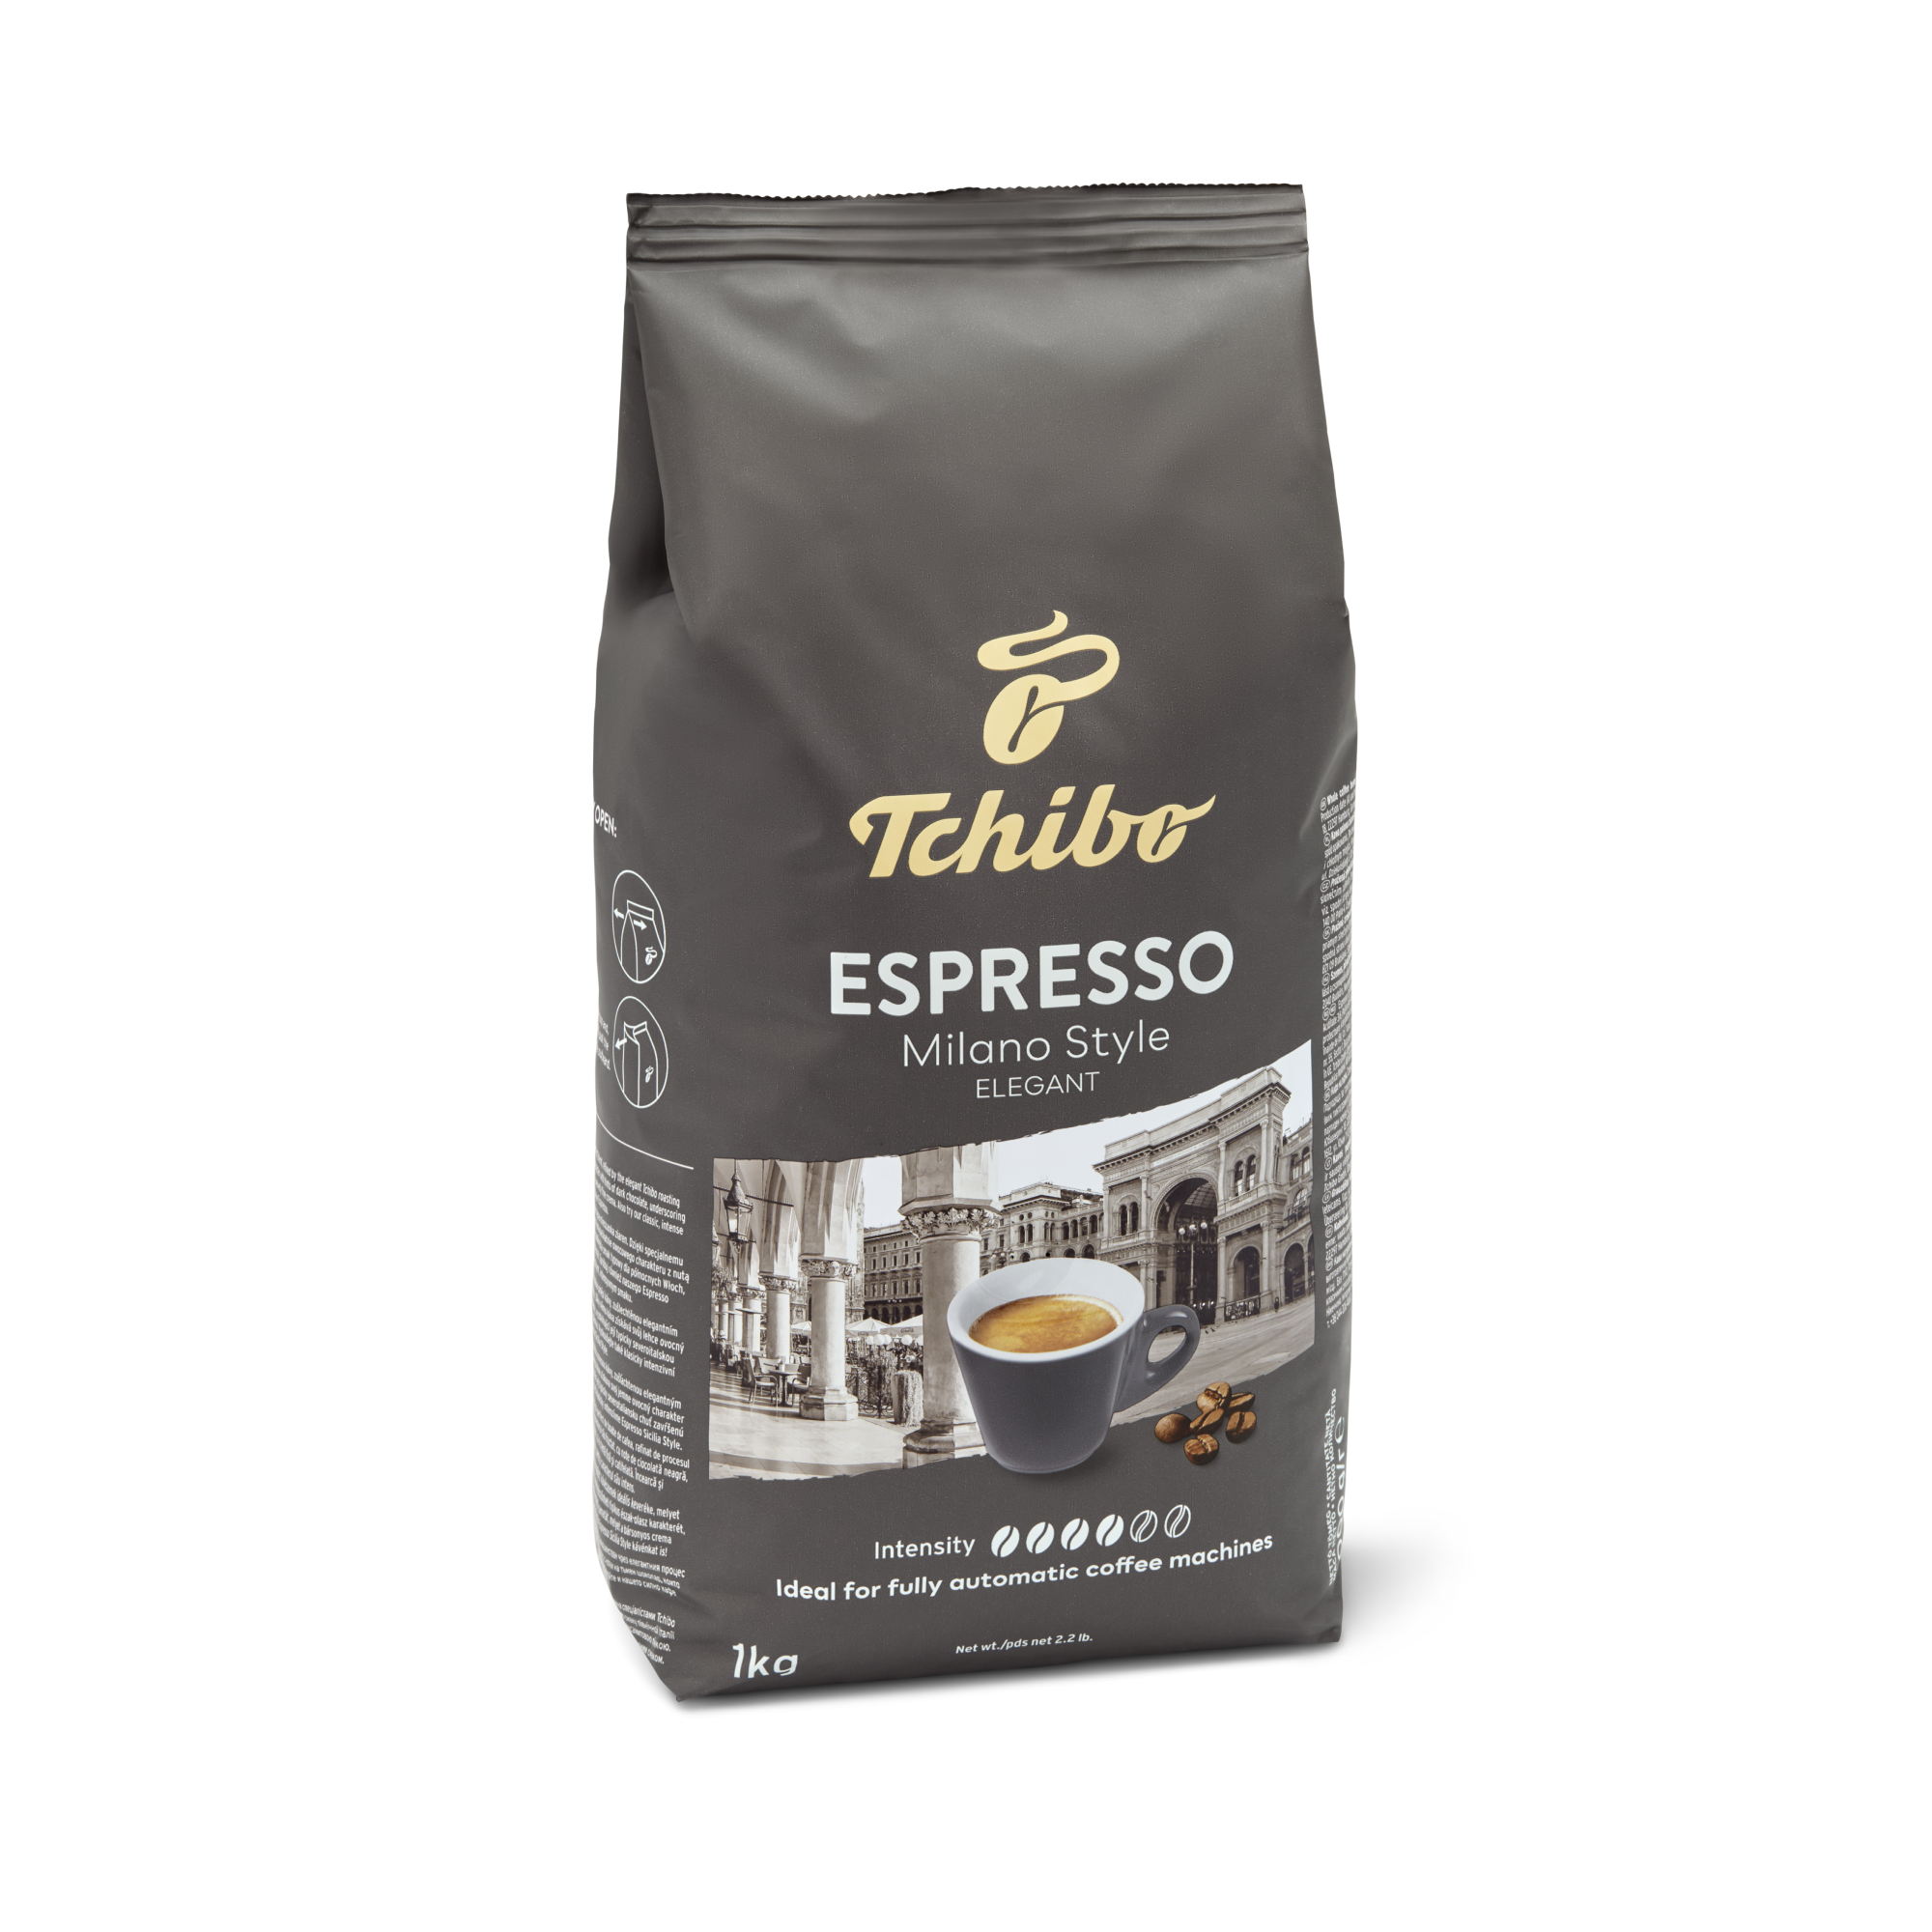 Milano Style Espresso 35.2oz